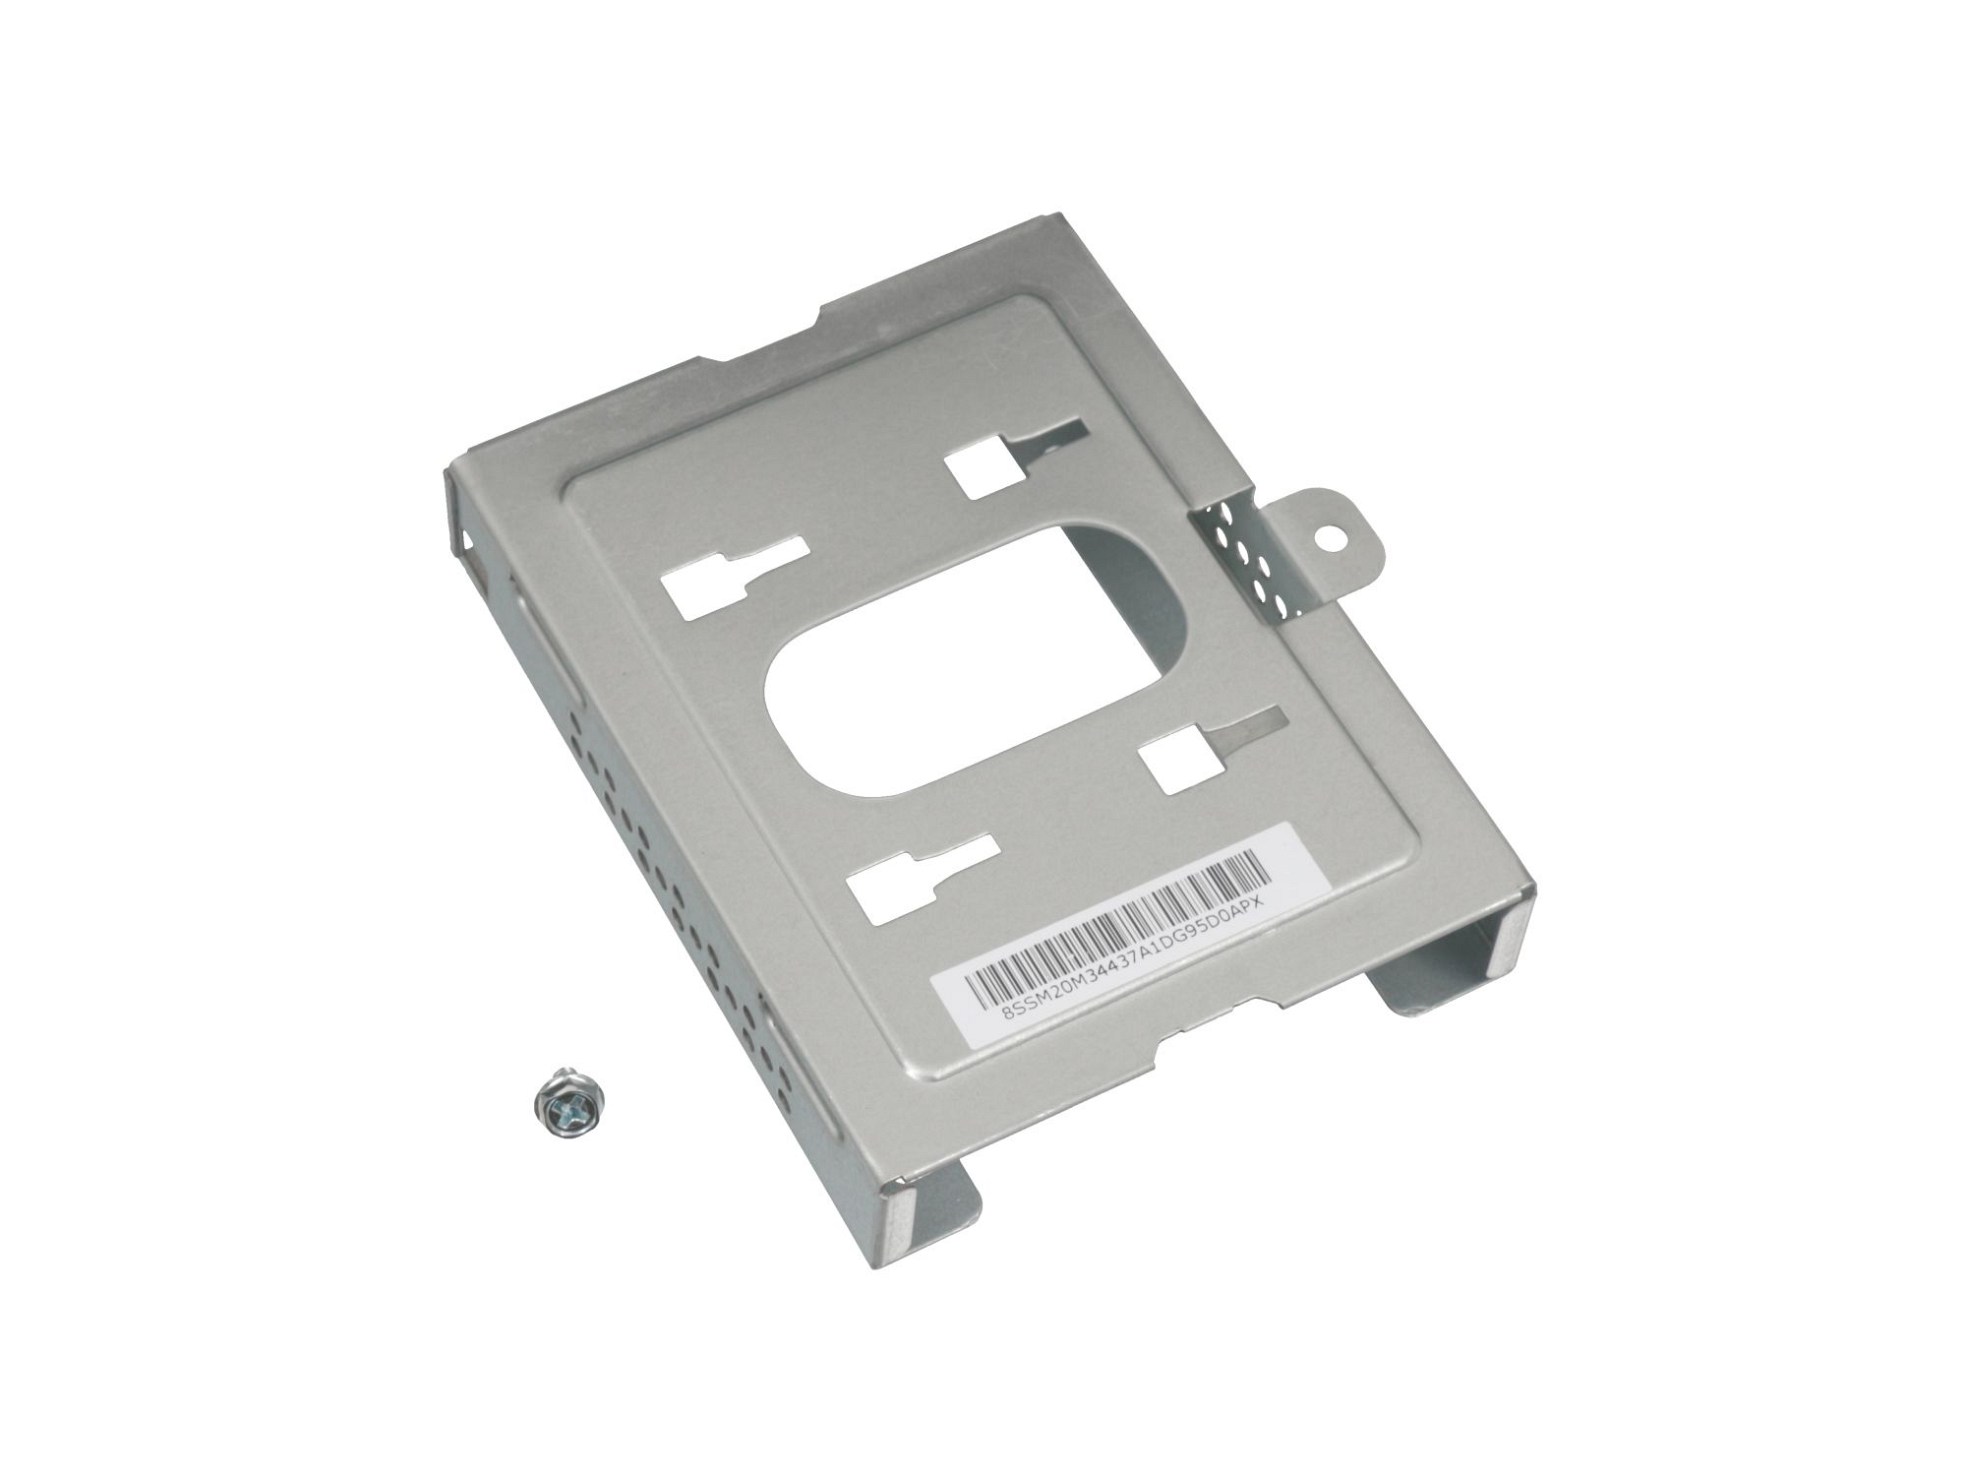 Festplatten-Einbaurahmen für den 1. Festplatten Schacht Original für Lenovo IdeaCentre 310S-08IGM (90HX)